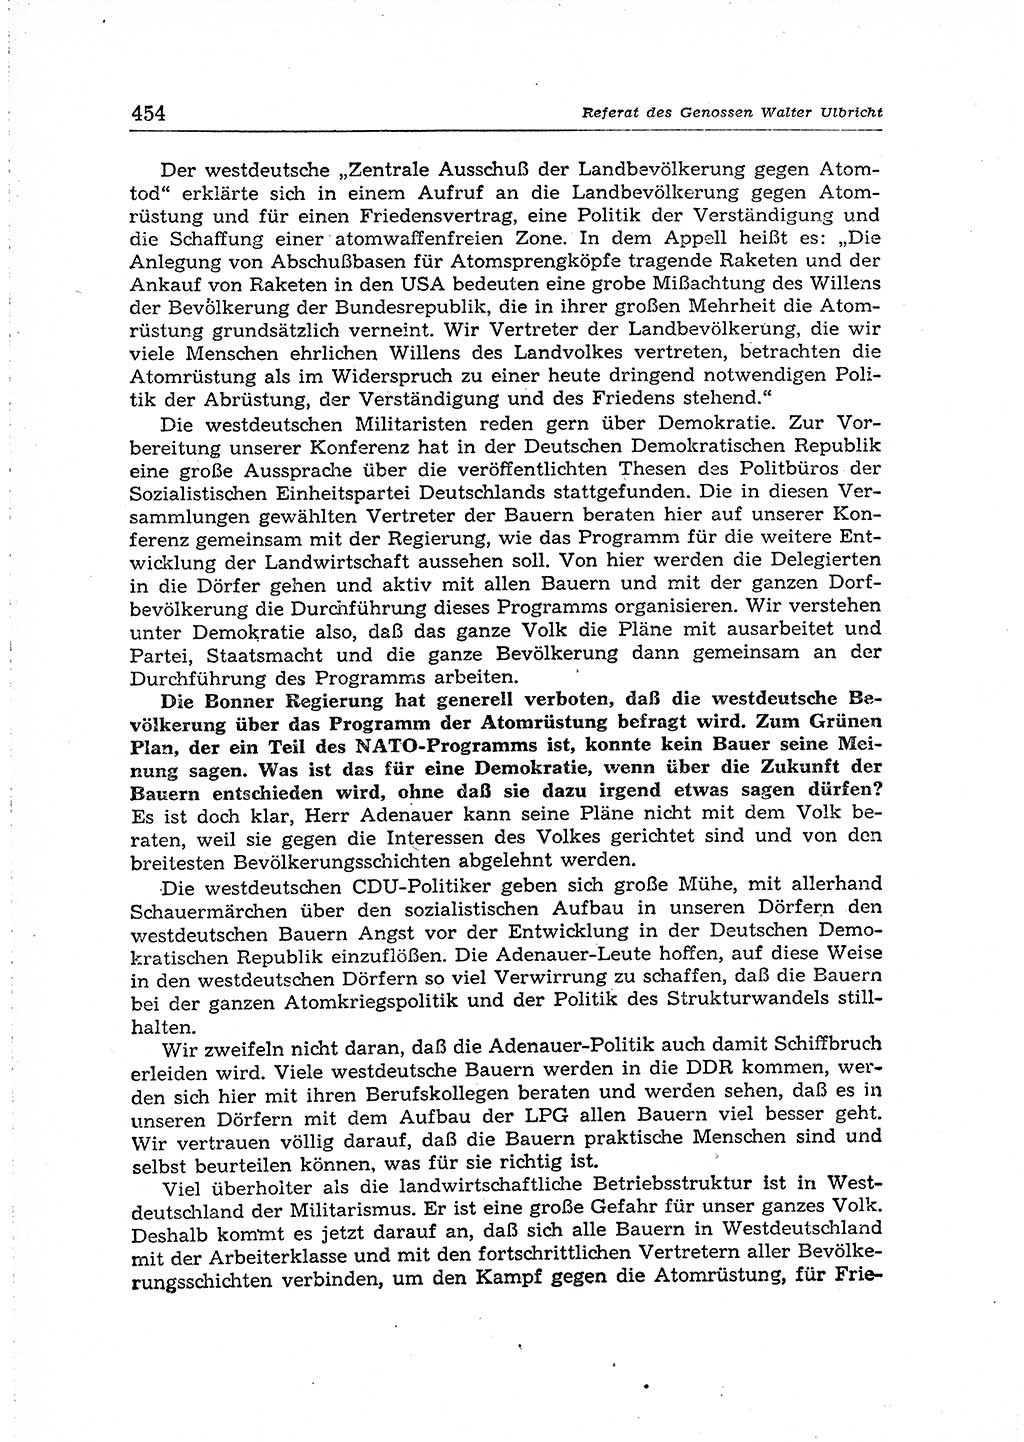 Neuer Weg (NW), Organ des Zentralkomitees (ZK) der SED (Sozialistische Einheitspartei Deutschlands) für Fragen des Parteiaufbaus und des Parteilebens, 14. Jahrgang [Deutsche Demokratische Republik (DDR)] 1959, Seite 454 (NW ZK SED DDR 1959, S. 454)